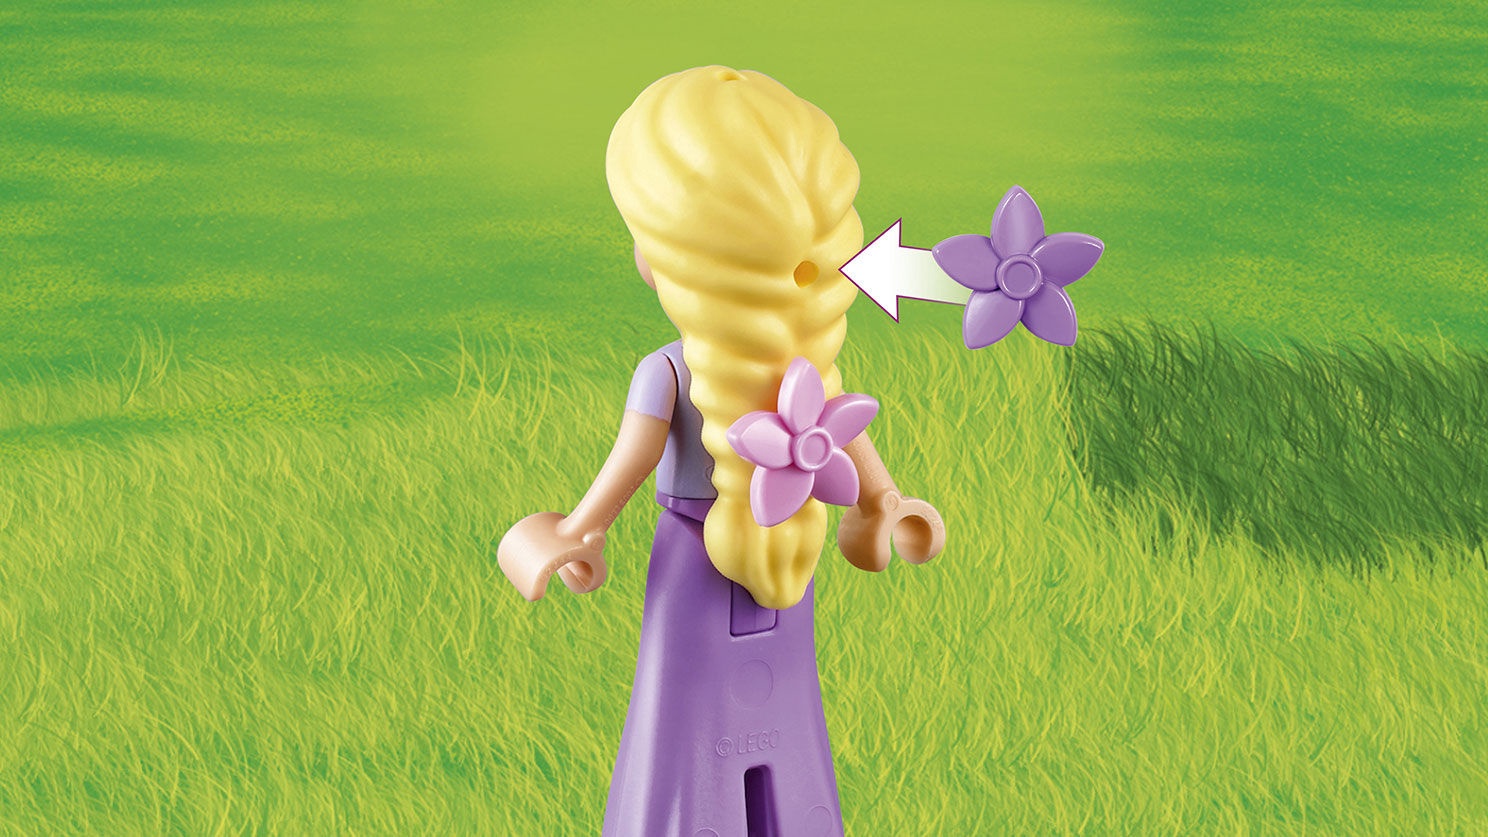 LEGO Rapunzel's Best Day Ever Set 41065